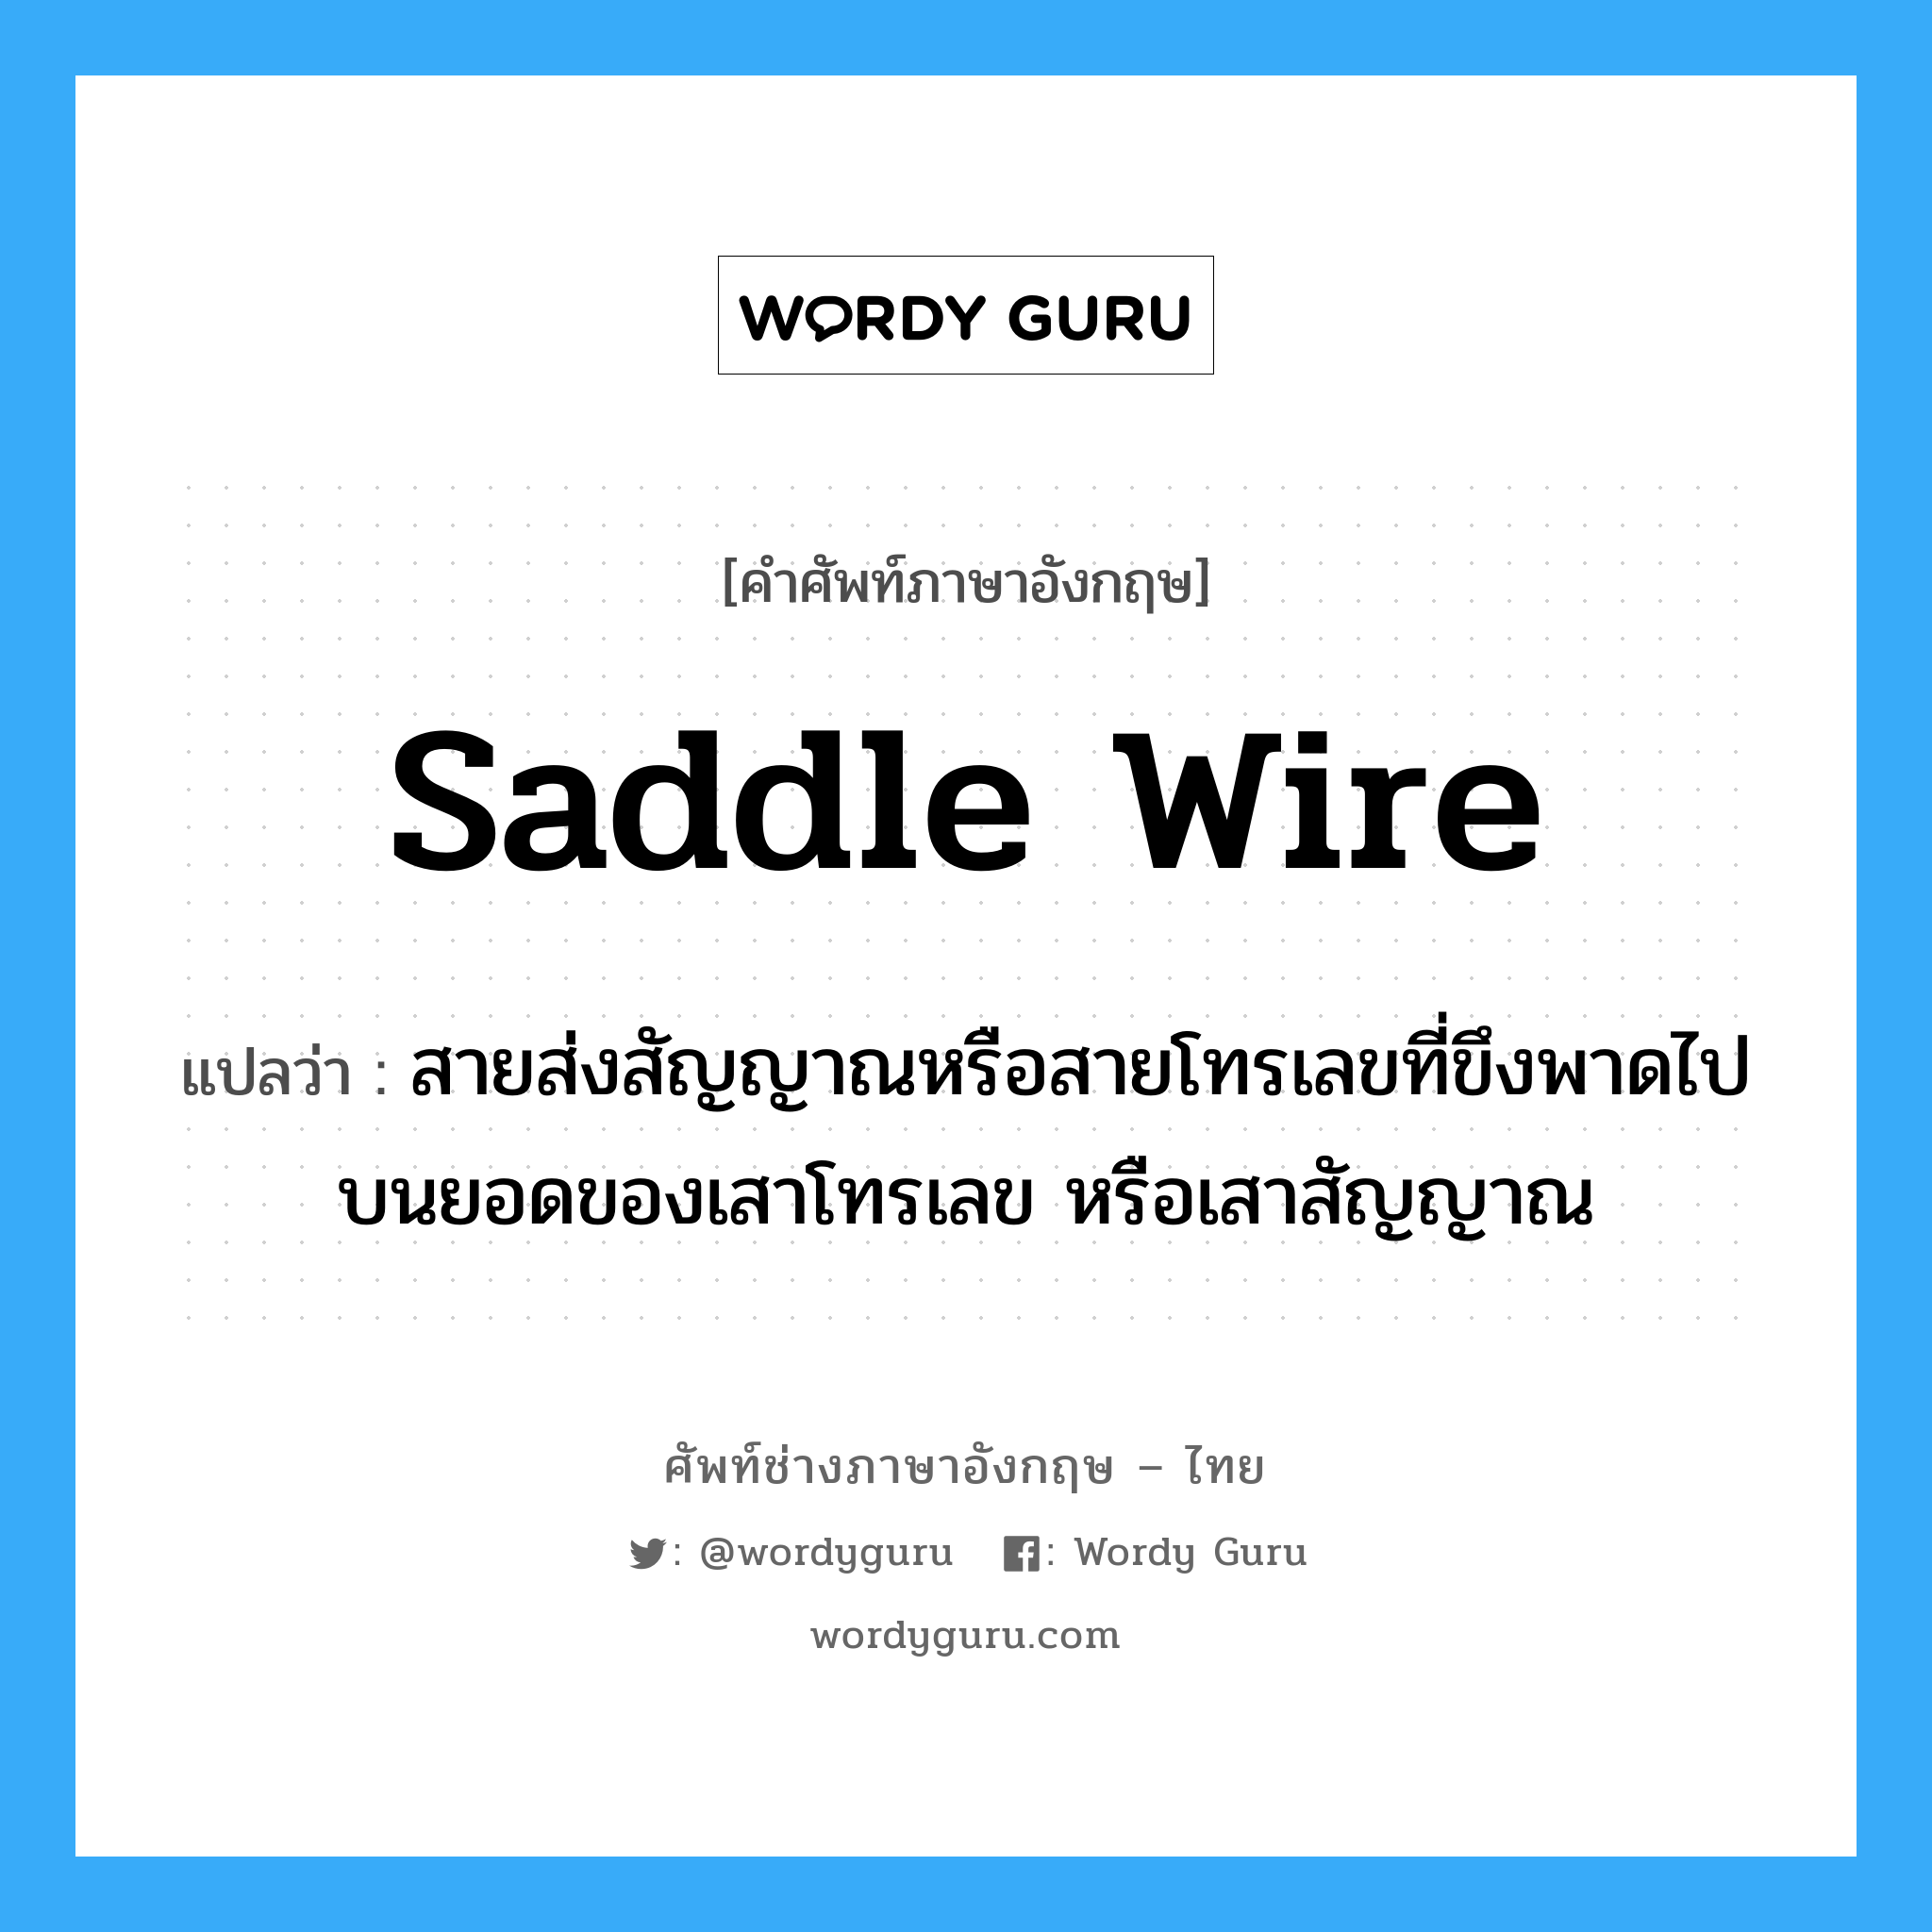 saddle wire แปลว่า?, คำศัพท์ช่างภาษาอังกฤษ - ไทย saddle wire คำศัพท์ภาษาอังกฤษ saddle wire แปลว่า สายส่งสัญญาณหรือสายโทรเลขที่ขึงพาดไปบนยอดของเสาโทรเลข หรือเสาสัญญาณ